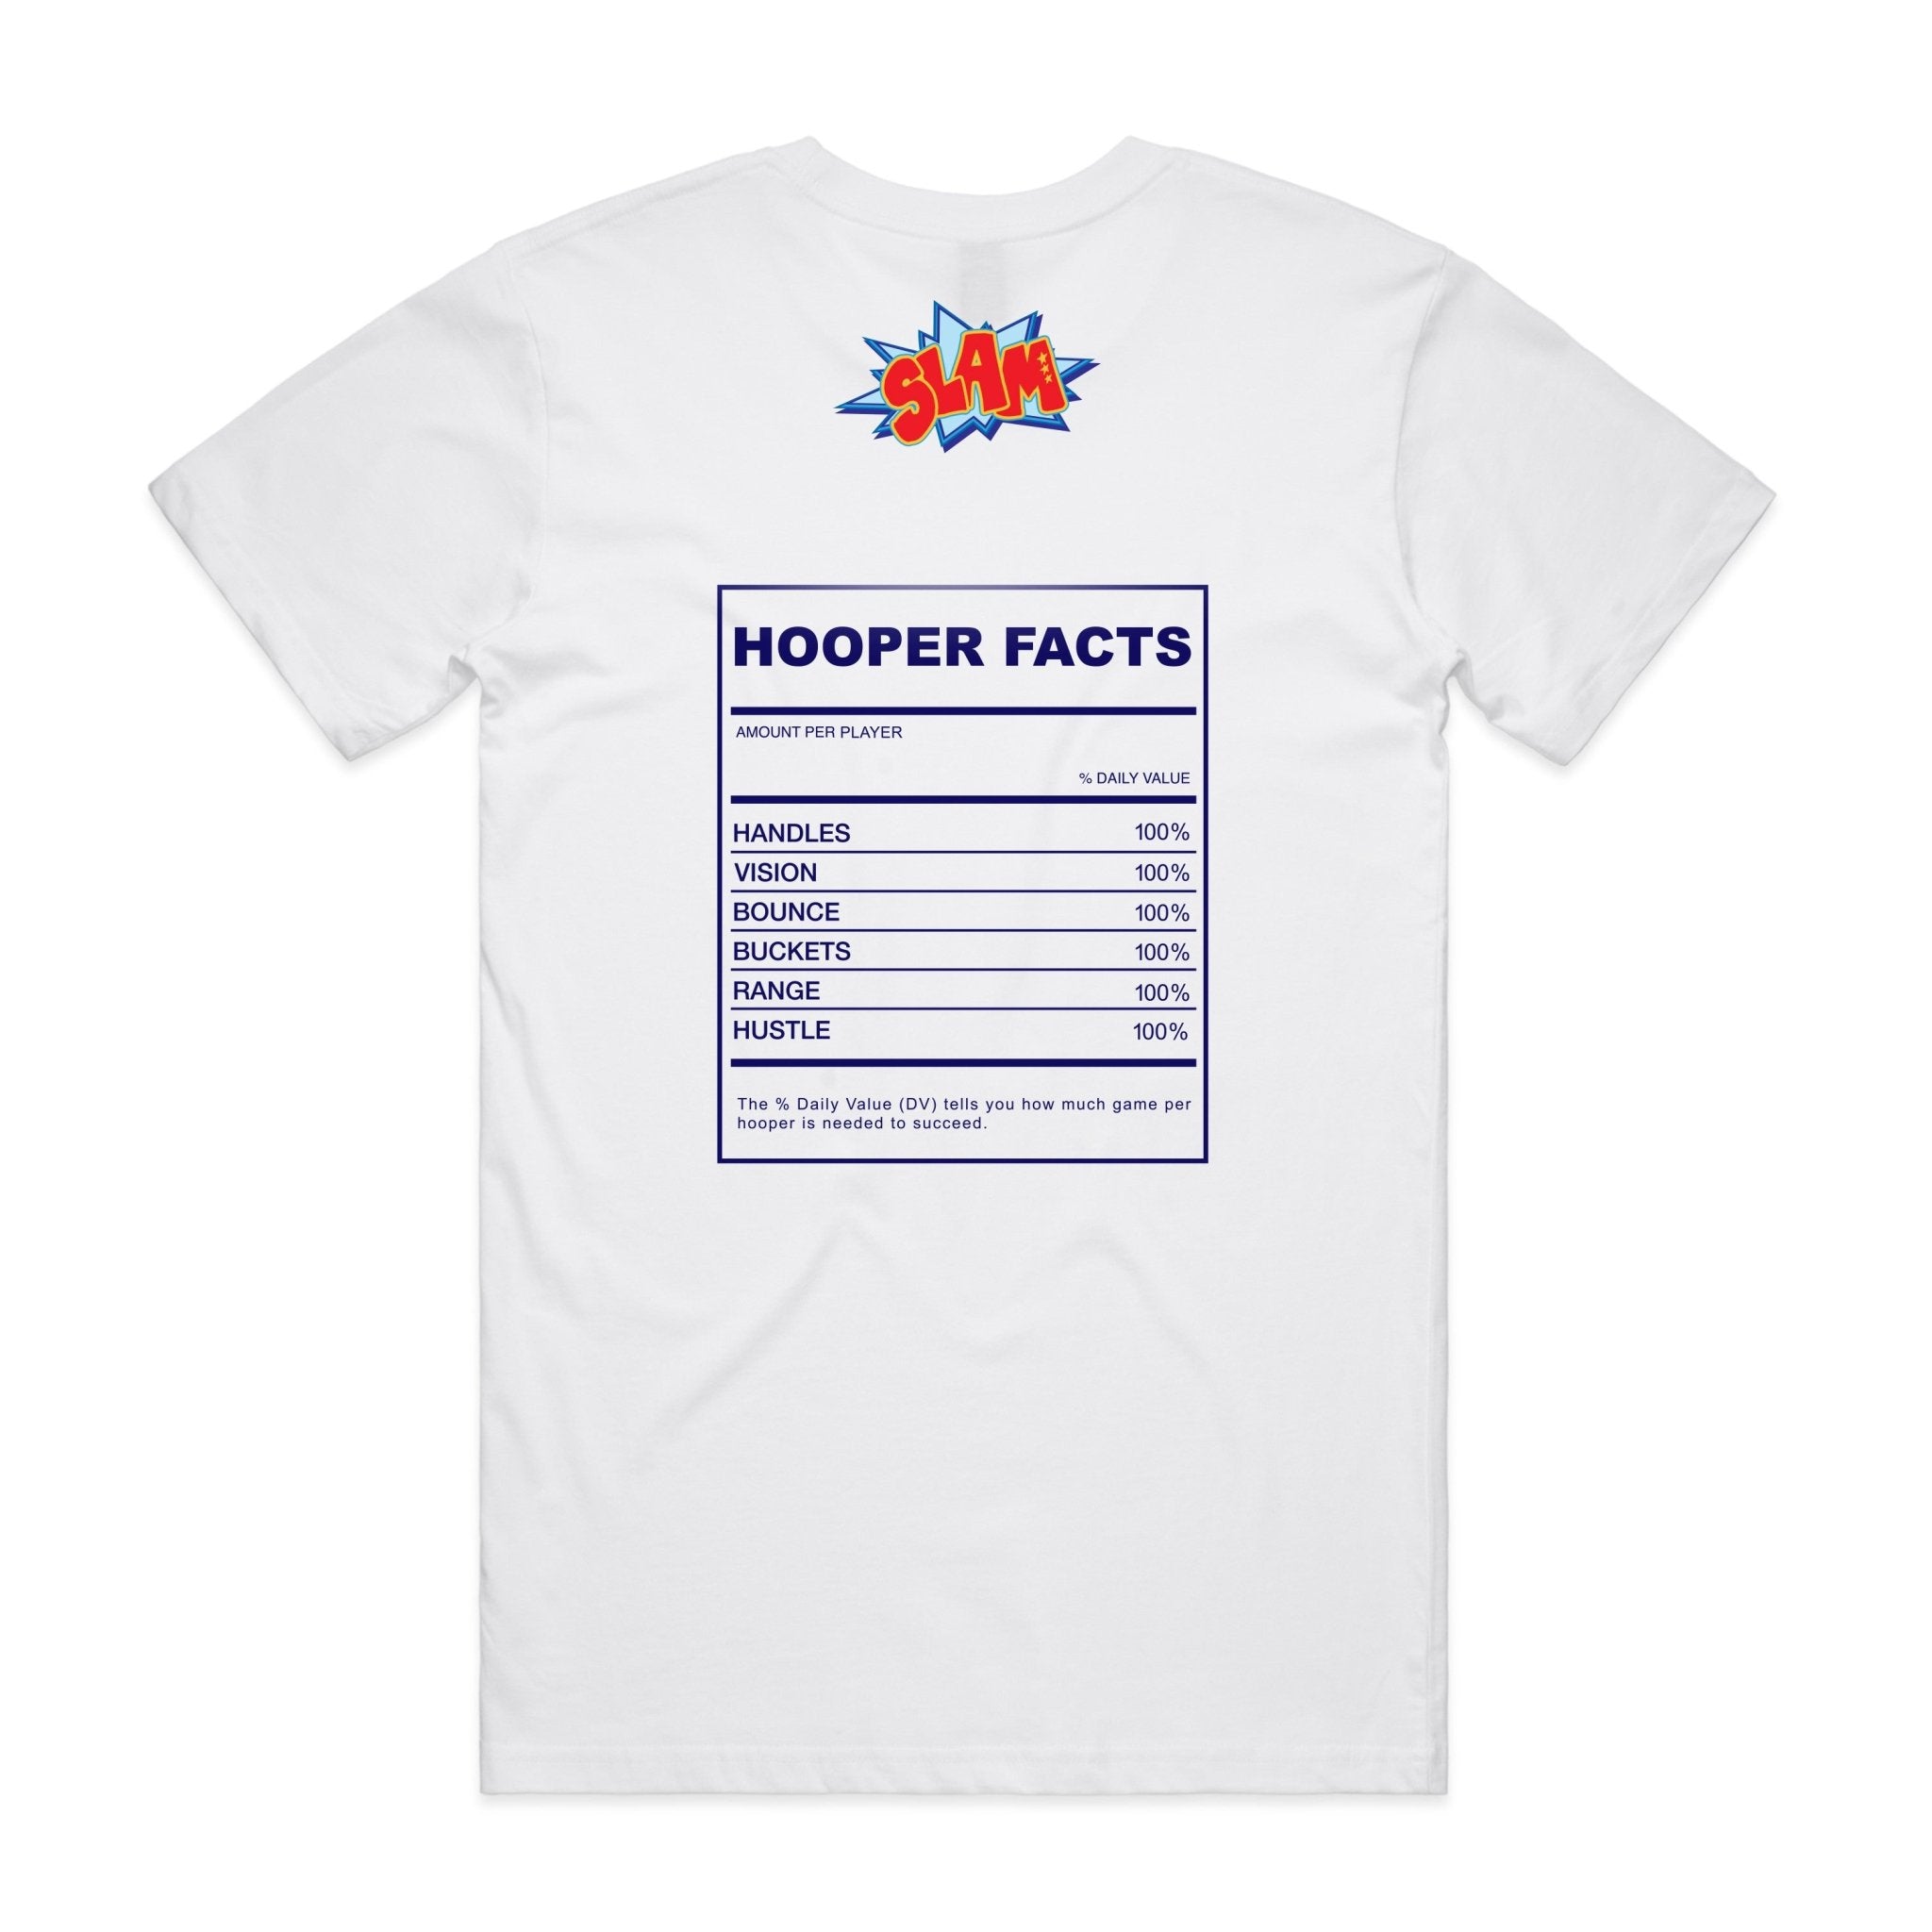 SLAM Hooper Facts Tee